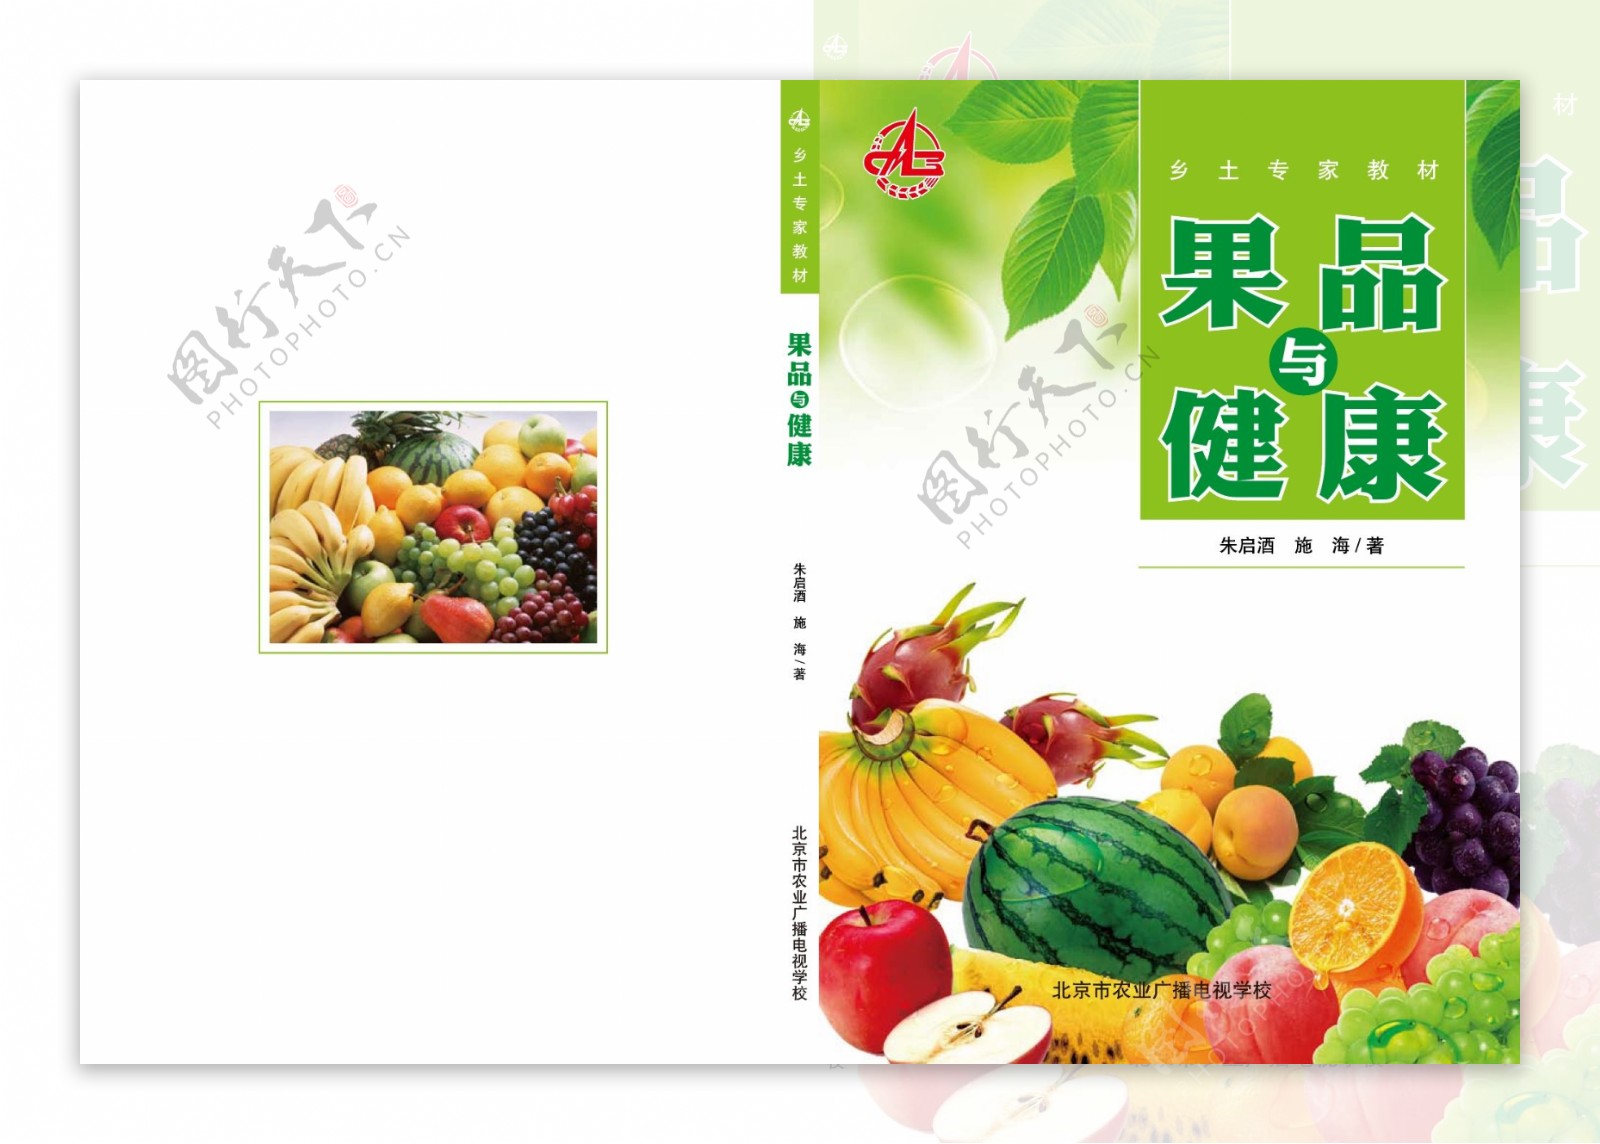 果品与健康封面设计画册